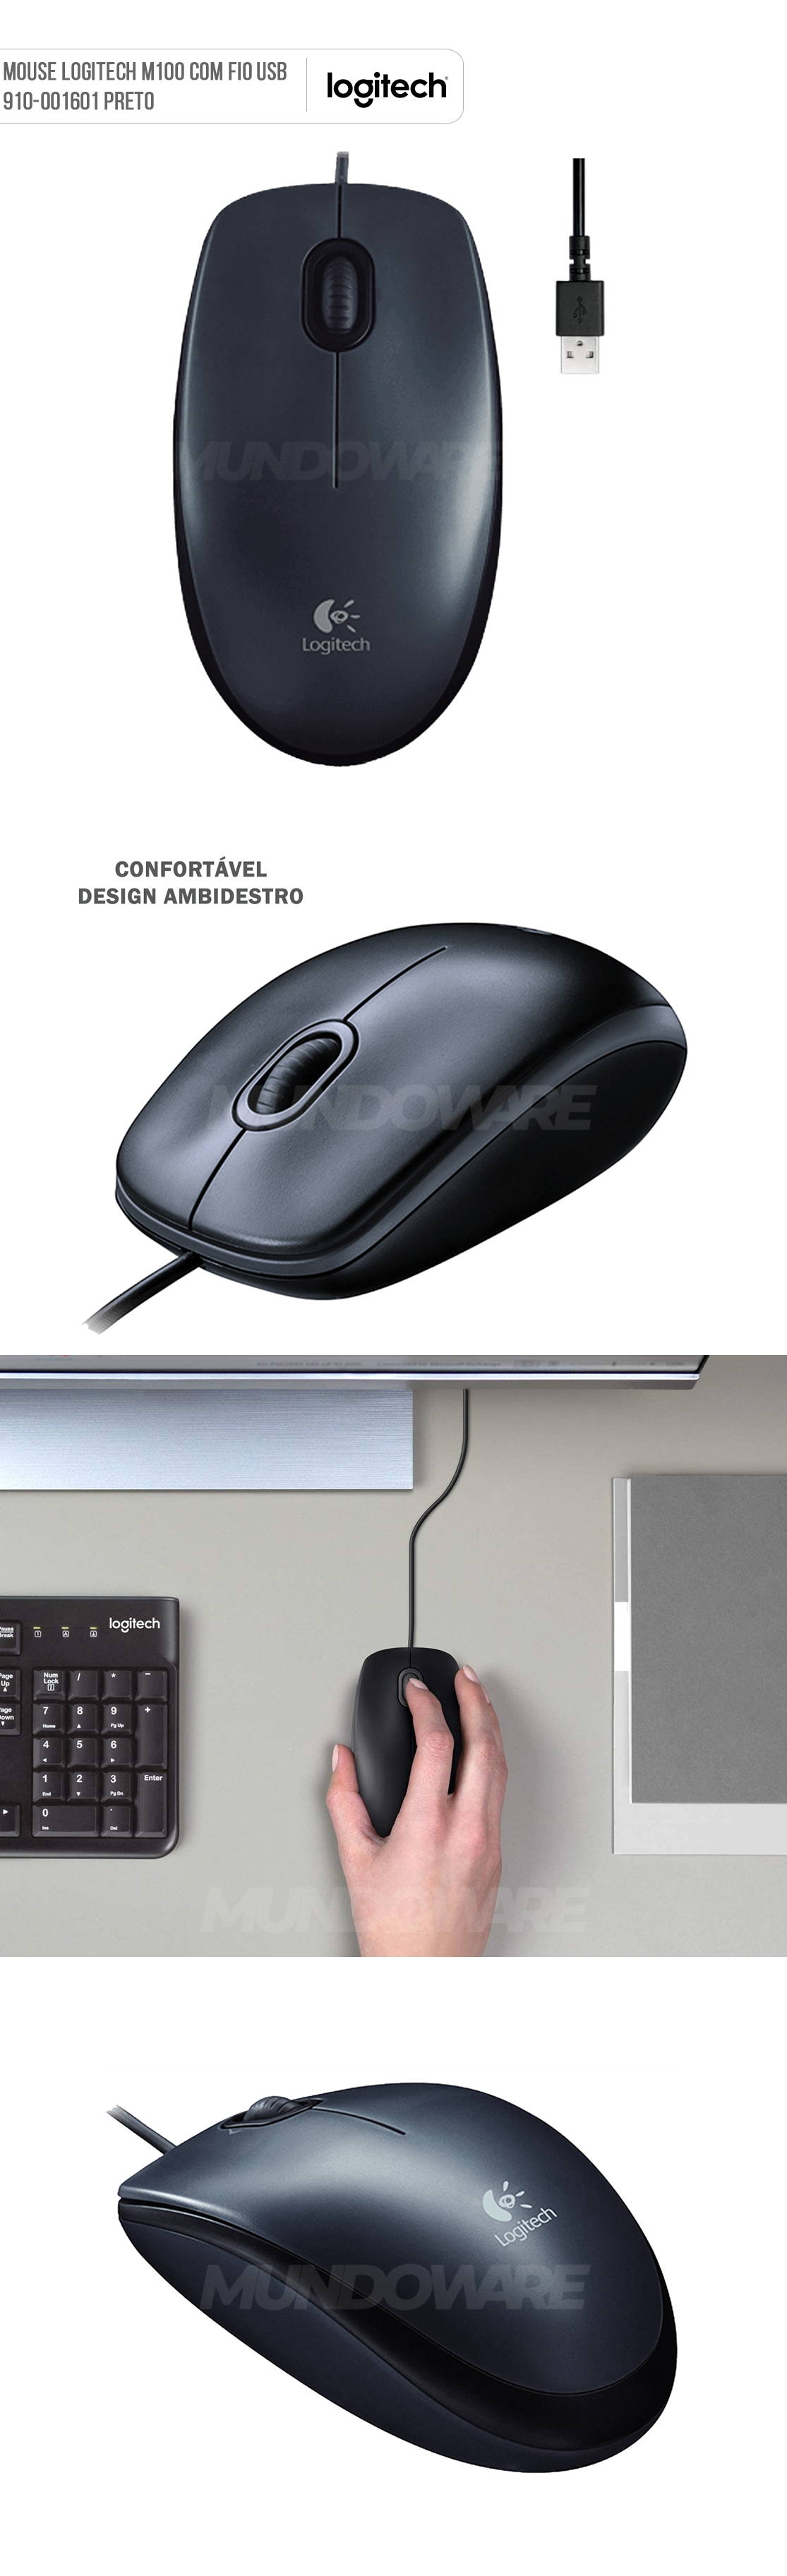 Mouse Com Fio USB 910-001601 Logitech M100 Preto